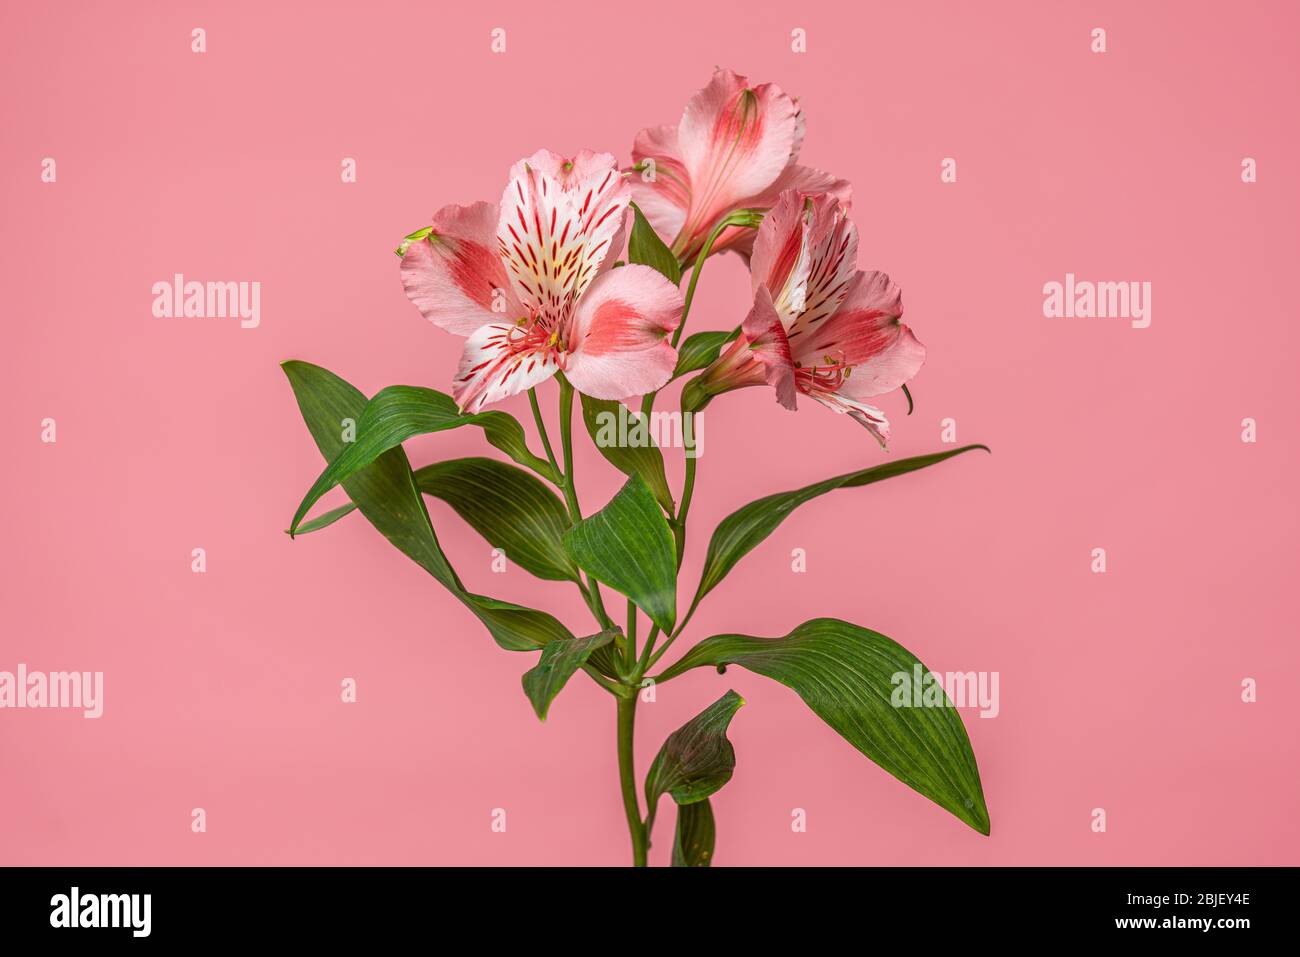 Vintage Foto von rosa Alstroemeria Blumen schließen auf rosa Hintergrund. Zarte glänzende Blütenblätter aus rosa peruanischen Lilien - Blumenmuster zum Gruß Stockfoto